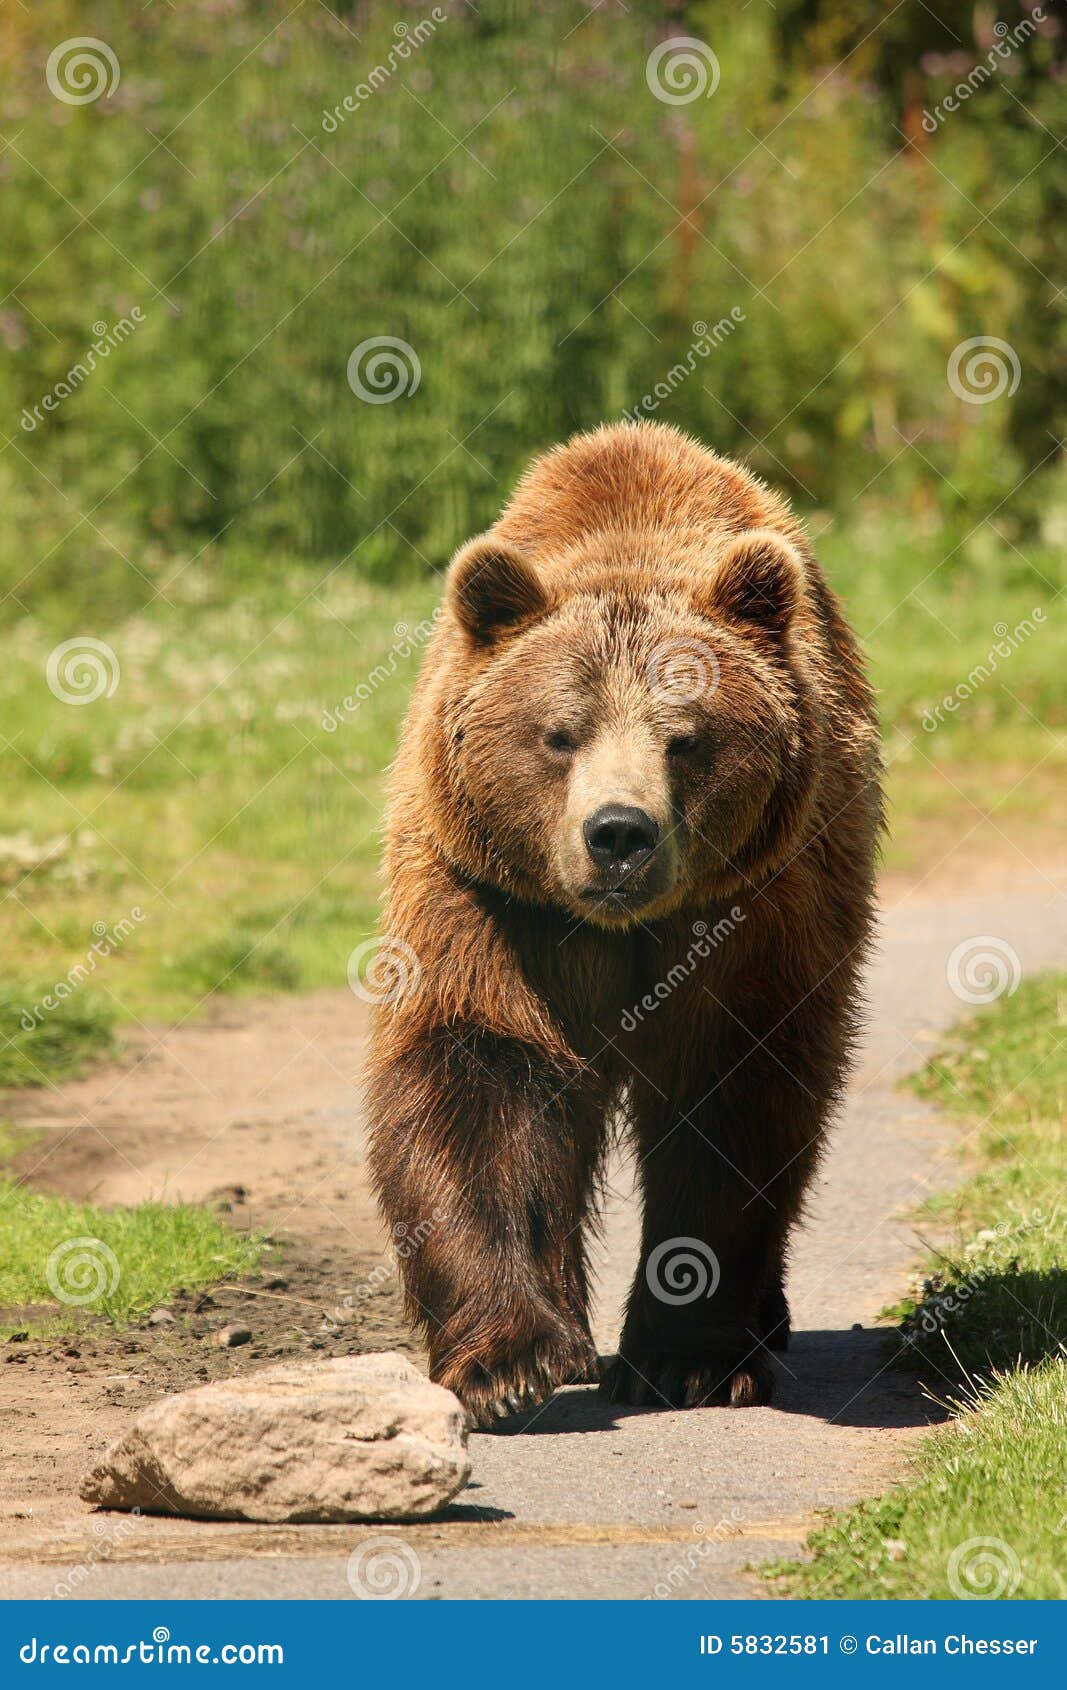 photo of a european brown bear